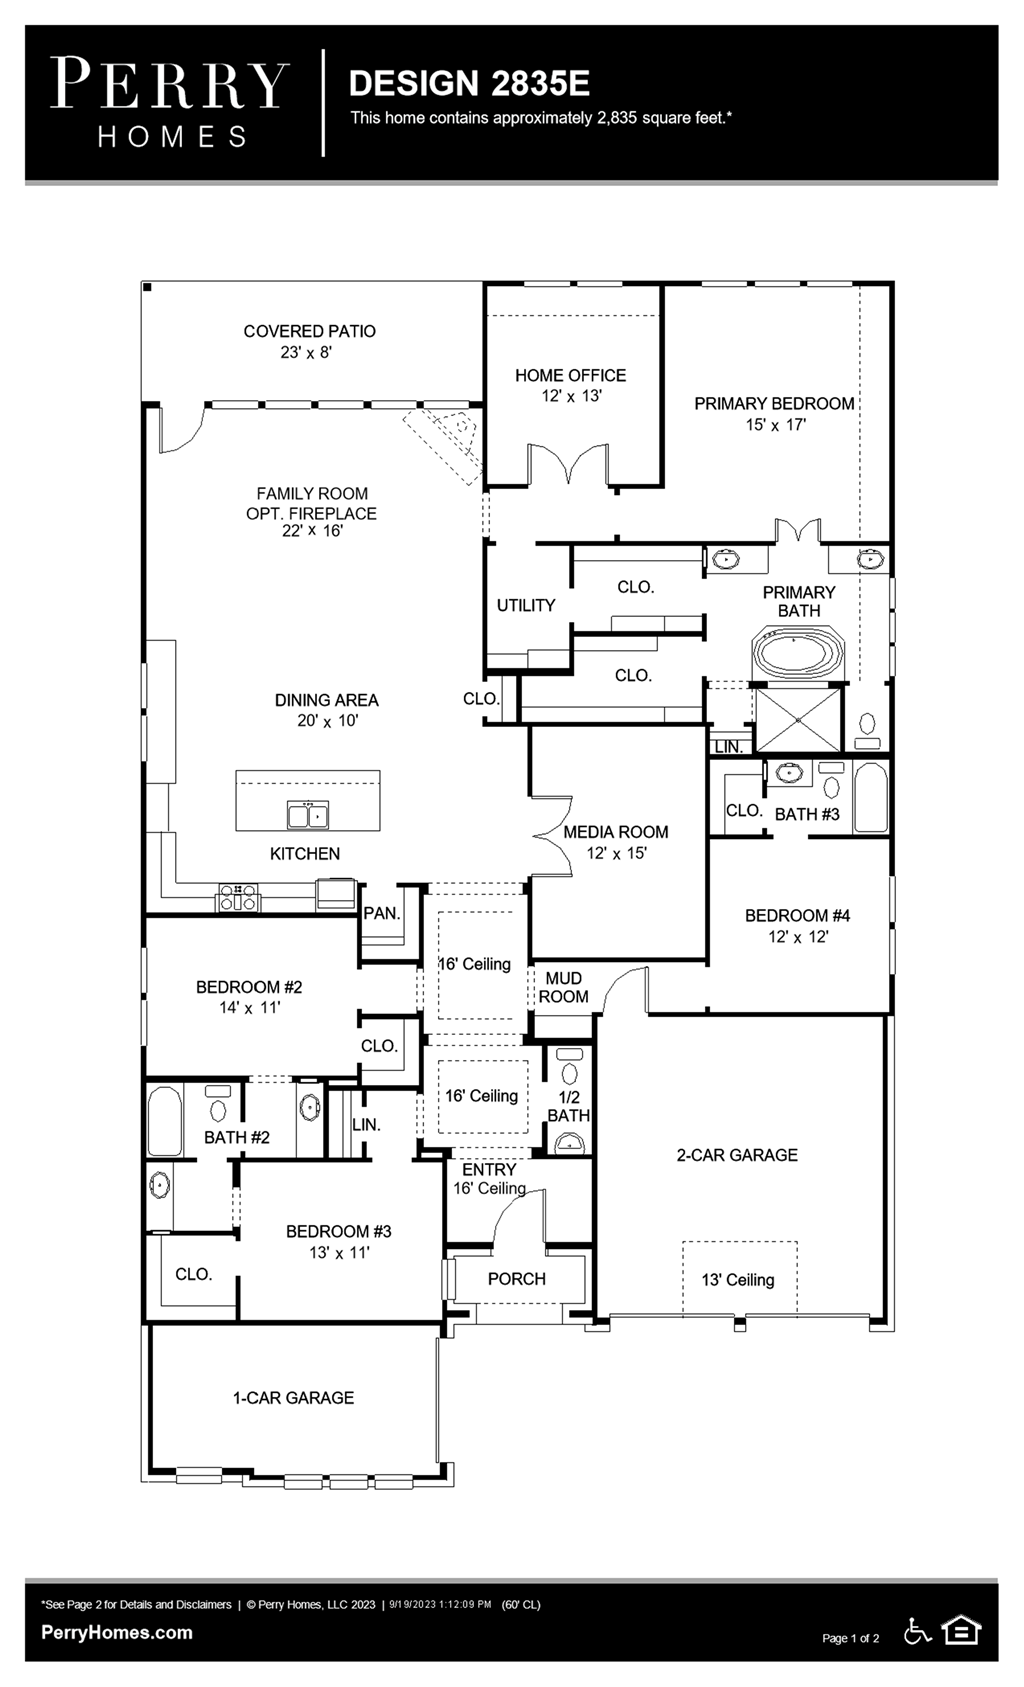 Floor Plan for 2835E